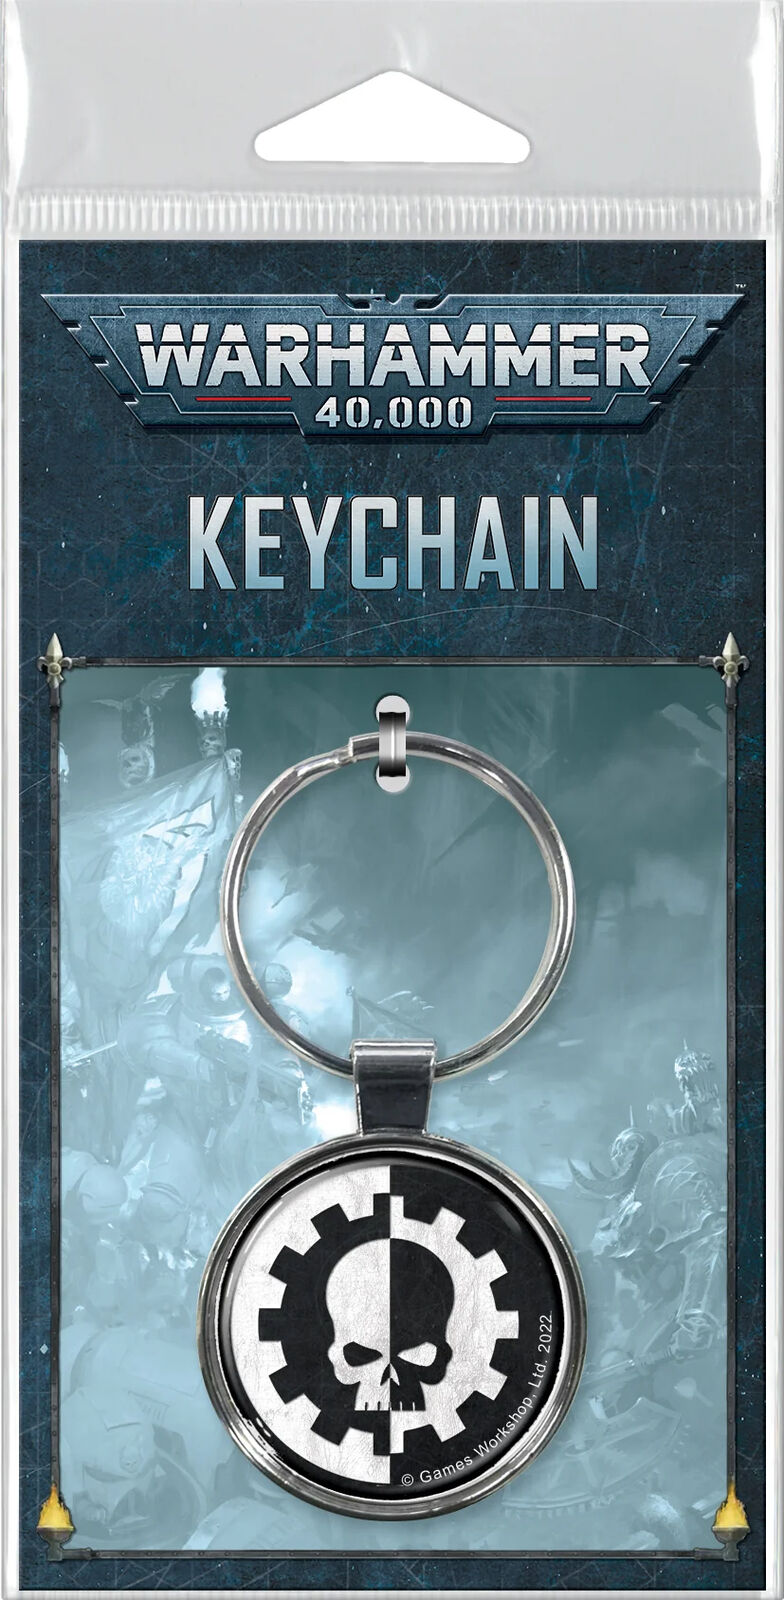 Warhammer 40,000 Keychains